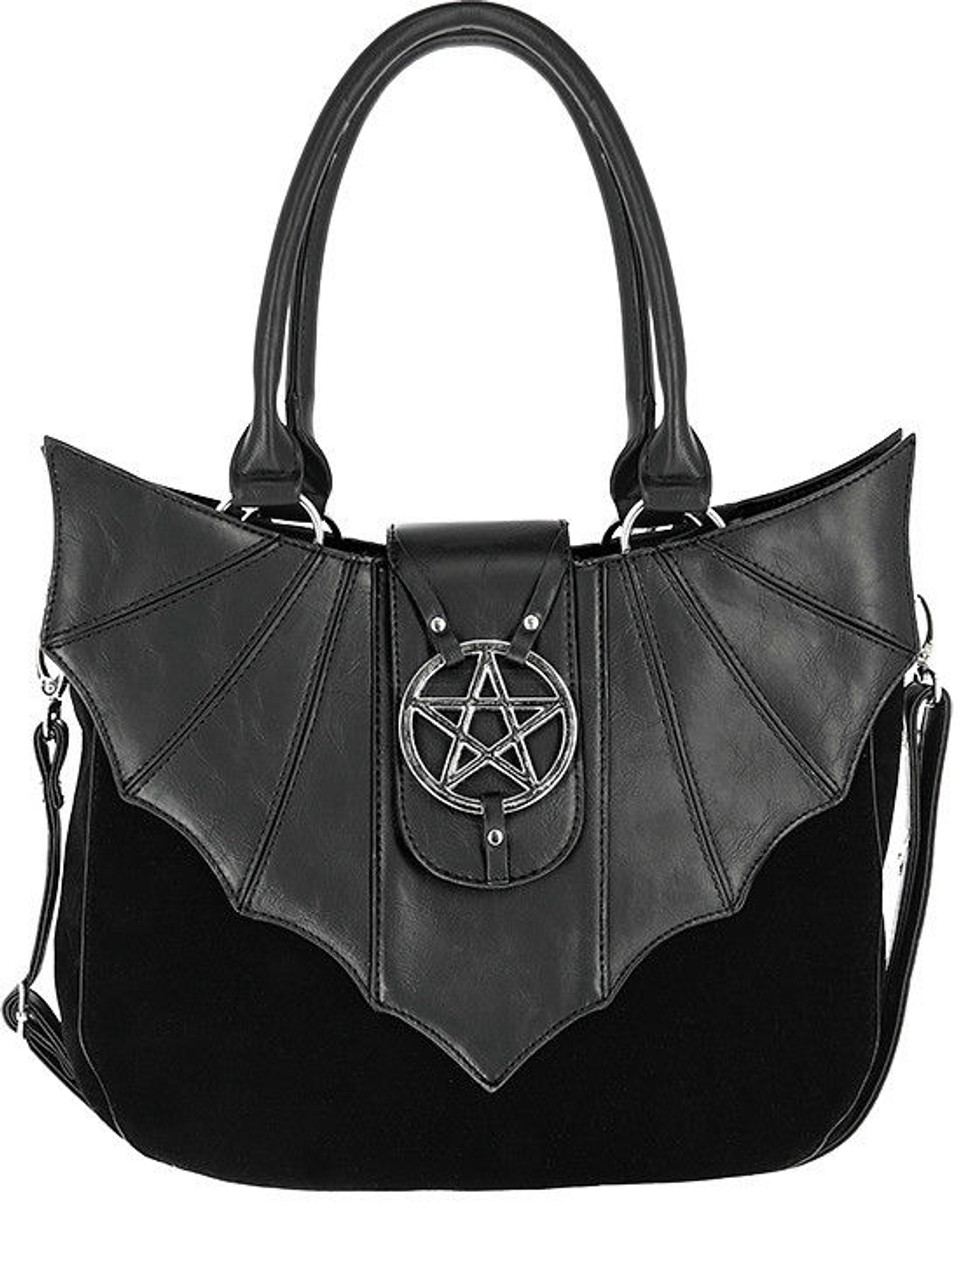 Restyle Ominous Bat Wing Pentagram Gothic Punk Faux Leather Vinyl Handbag  Purse